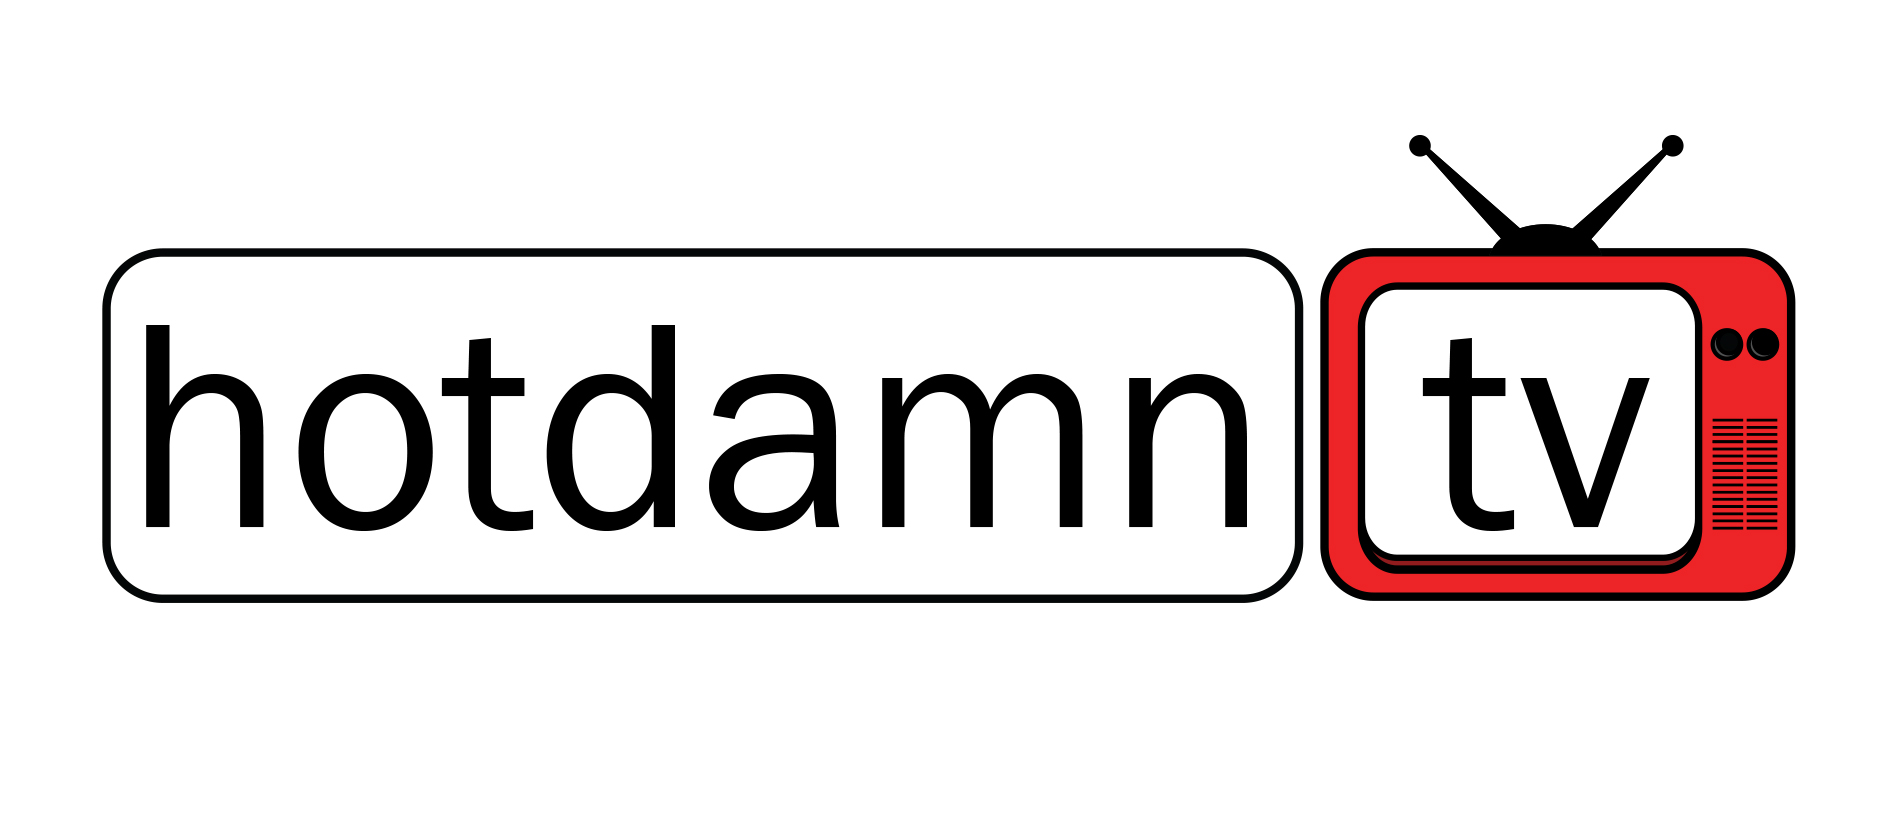 Hotdamn tv (Version 1)